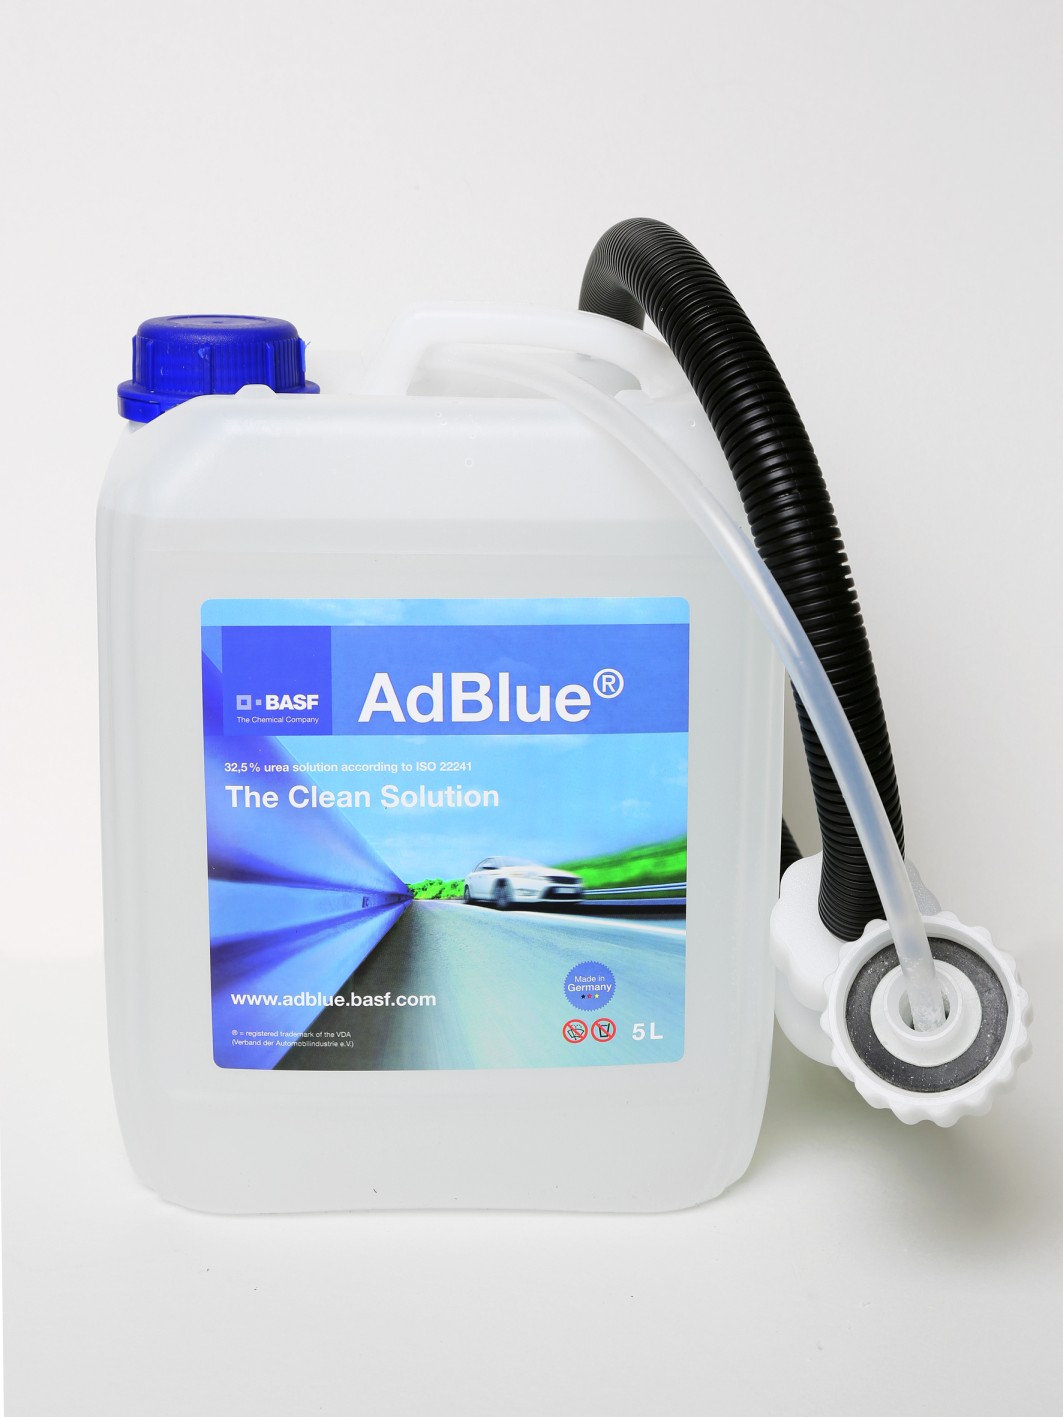 AdBlue 5L Angebot bei Globus Baumarkt